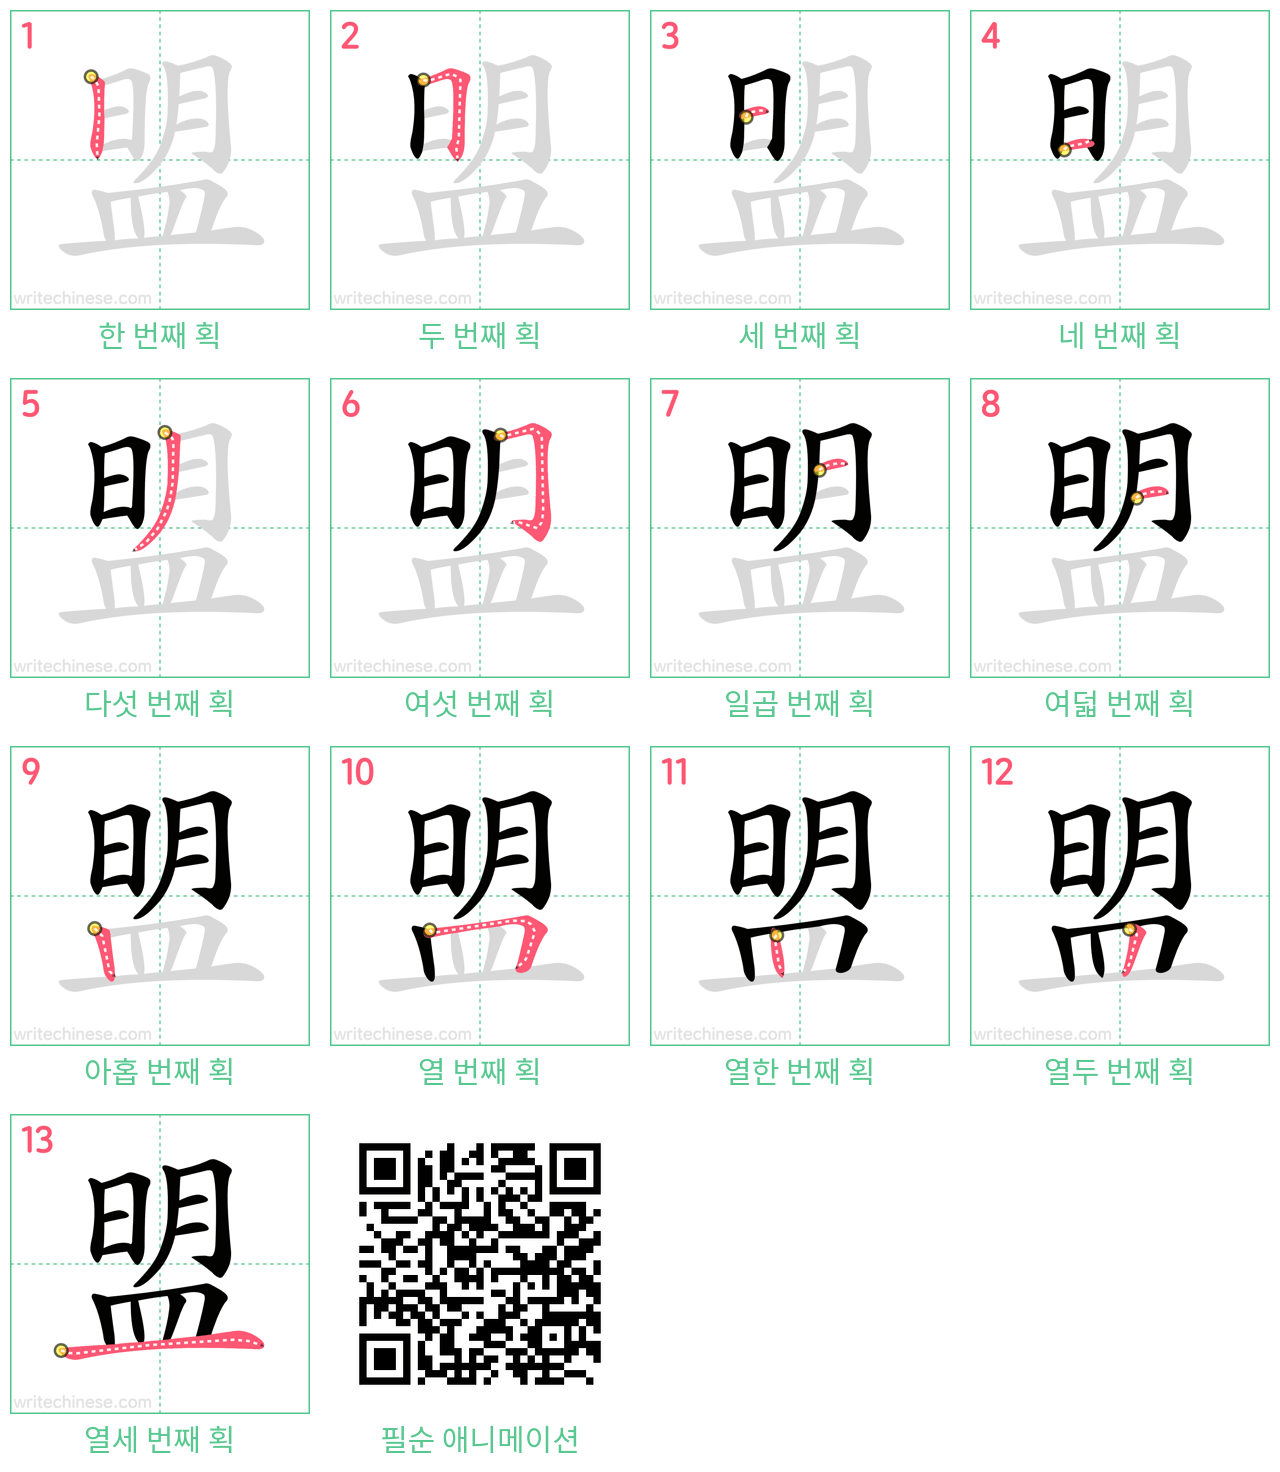 盟 step-by-step stroke order diagrams